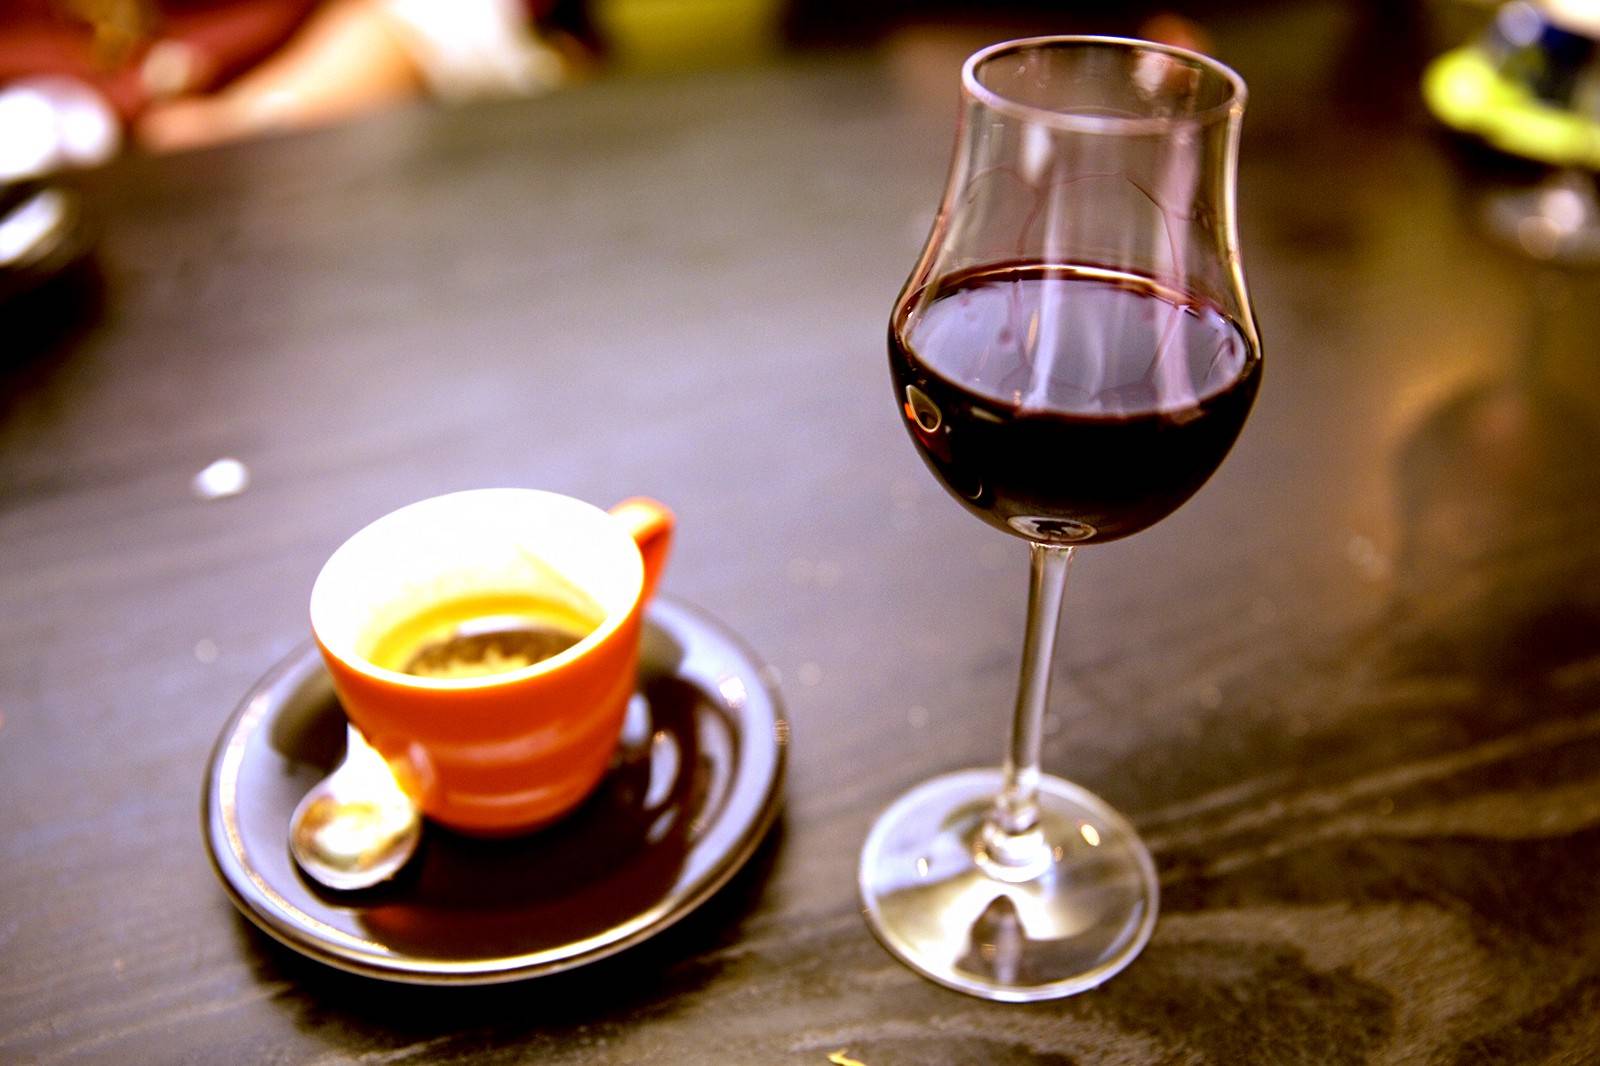 Кофе с алкоголем - как называется, рецепты с разным спиртным, польза и вред